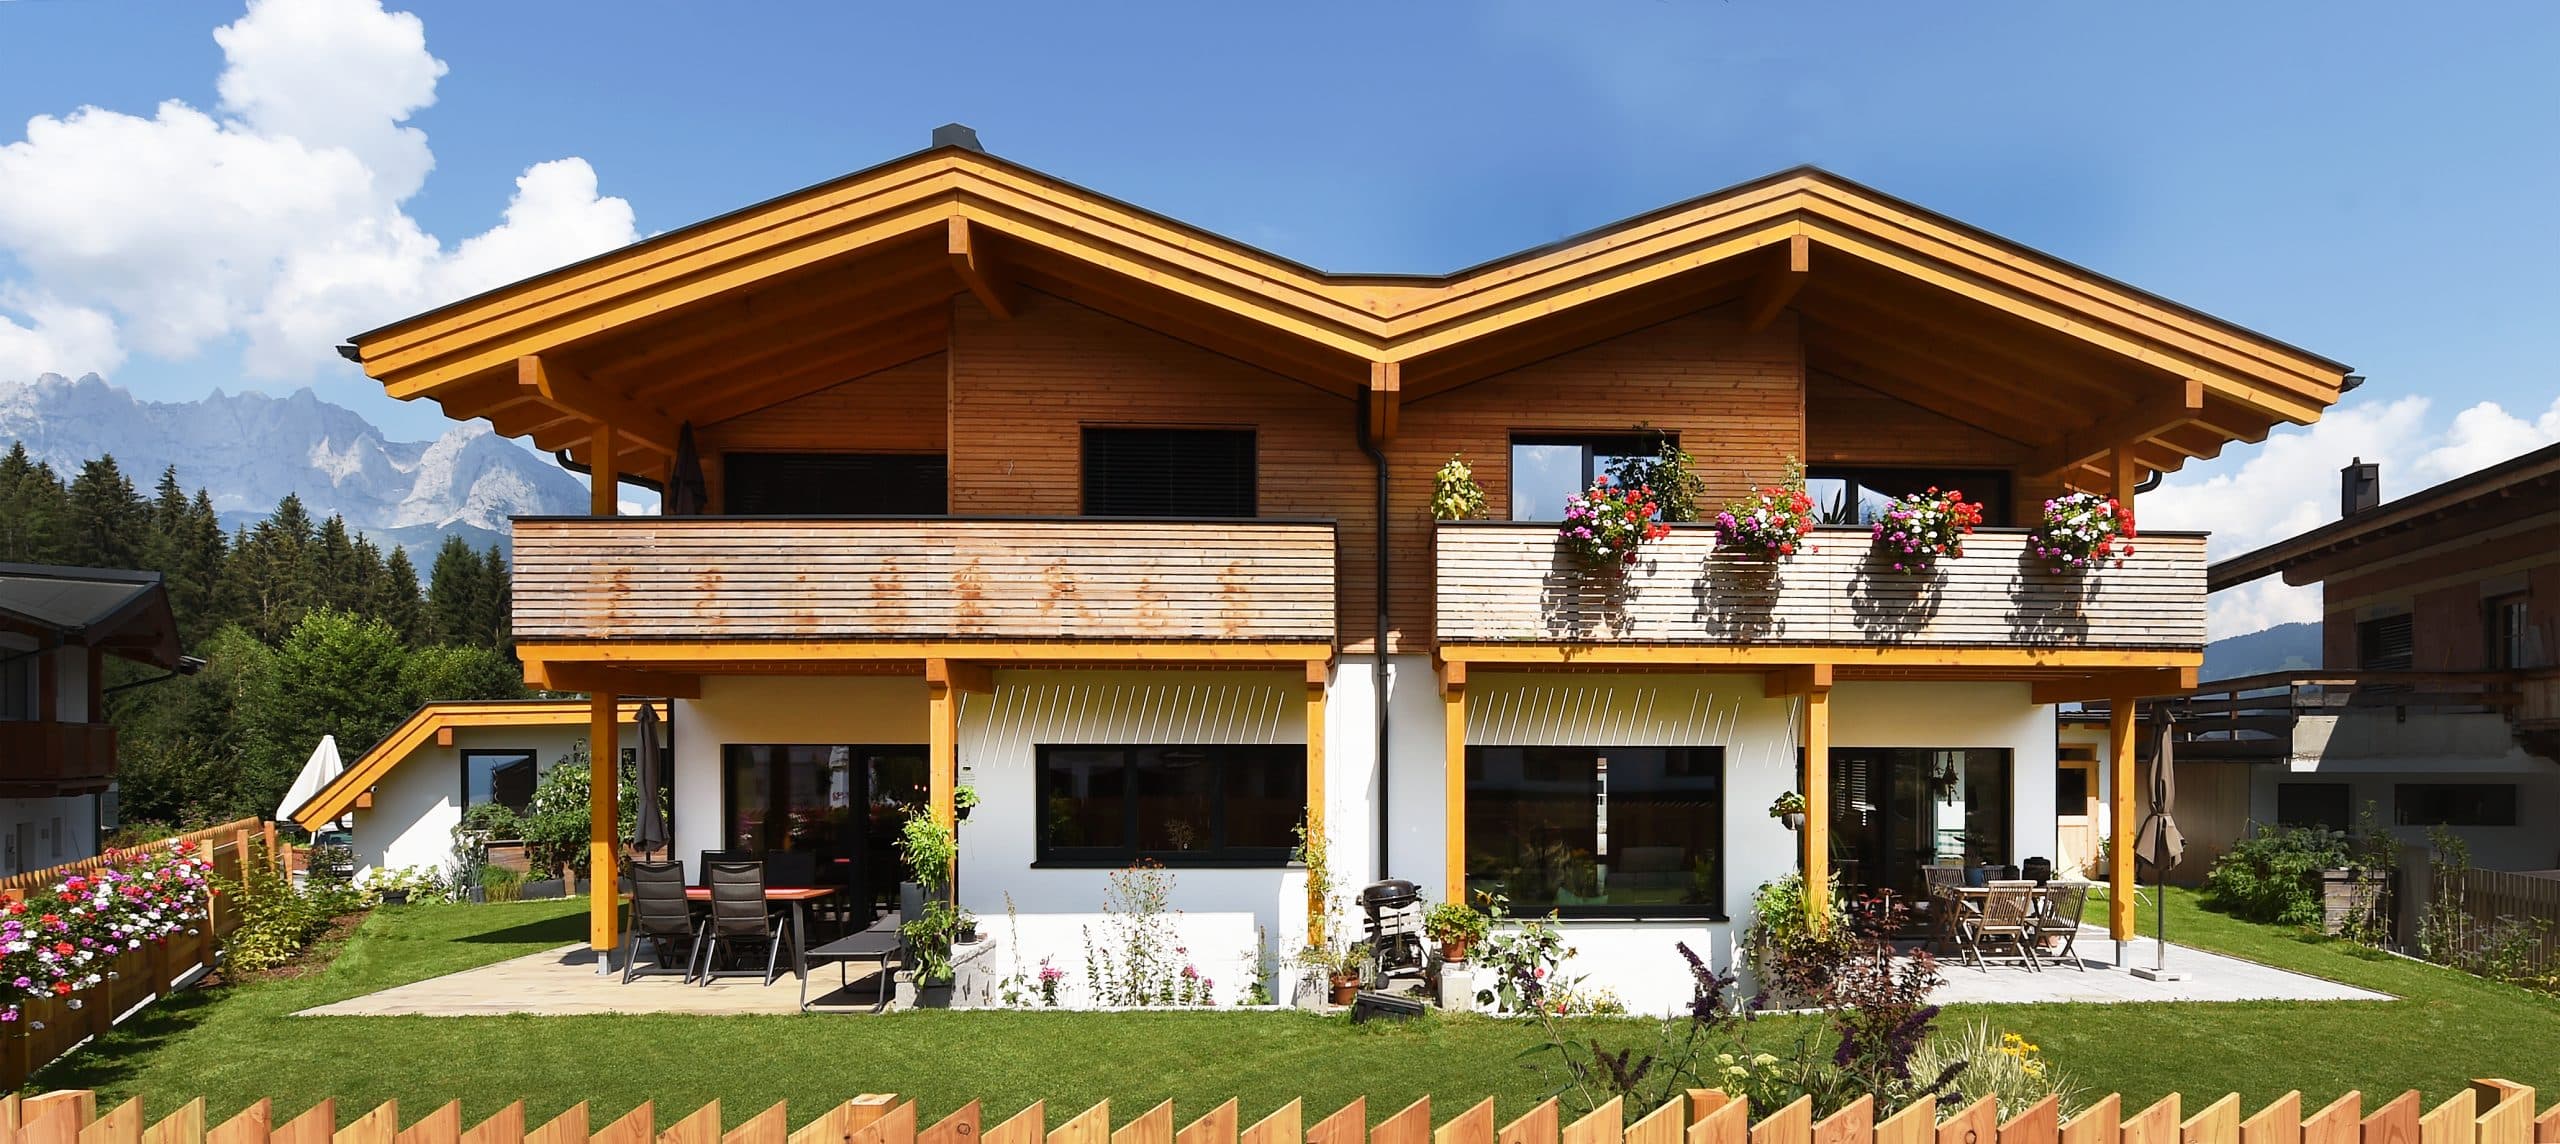 ERLER BAU GmbH zeigt ein schönes, rustikales Holzhaus mit großem Balkon und einer überdachten Terrasse mit gemütlichen Möbeln und vielen Pflanzen.